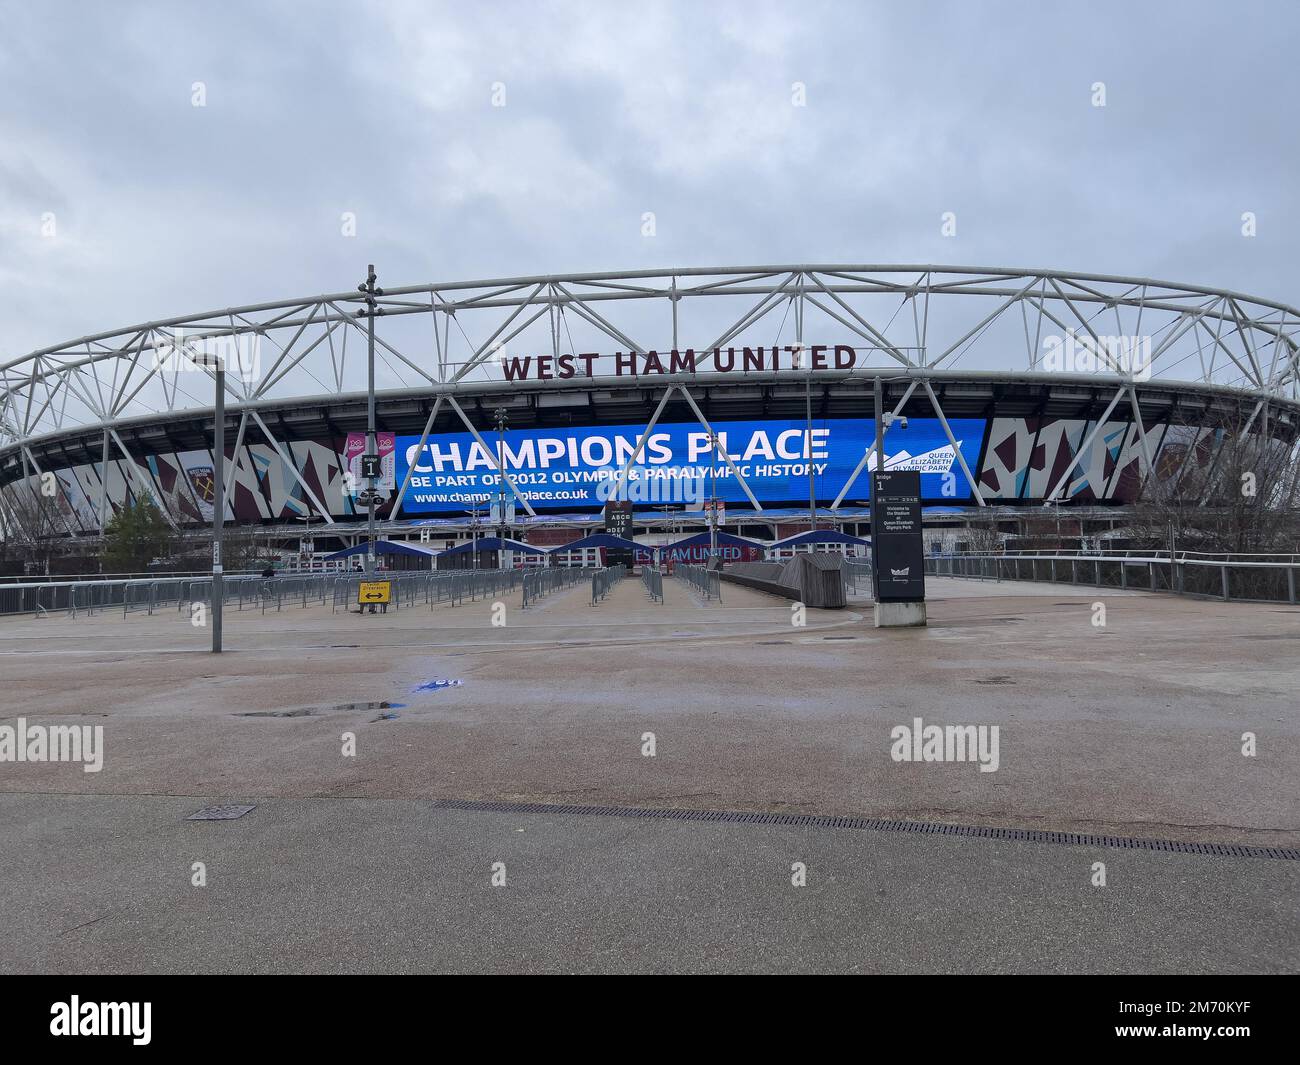 London Stadium im Queen Elizabeth Olympic Park - Heimstadion von West Ham United - LONDON, Großbritannien - 20. DEZEMBER 2022 Stockfoto